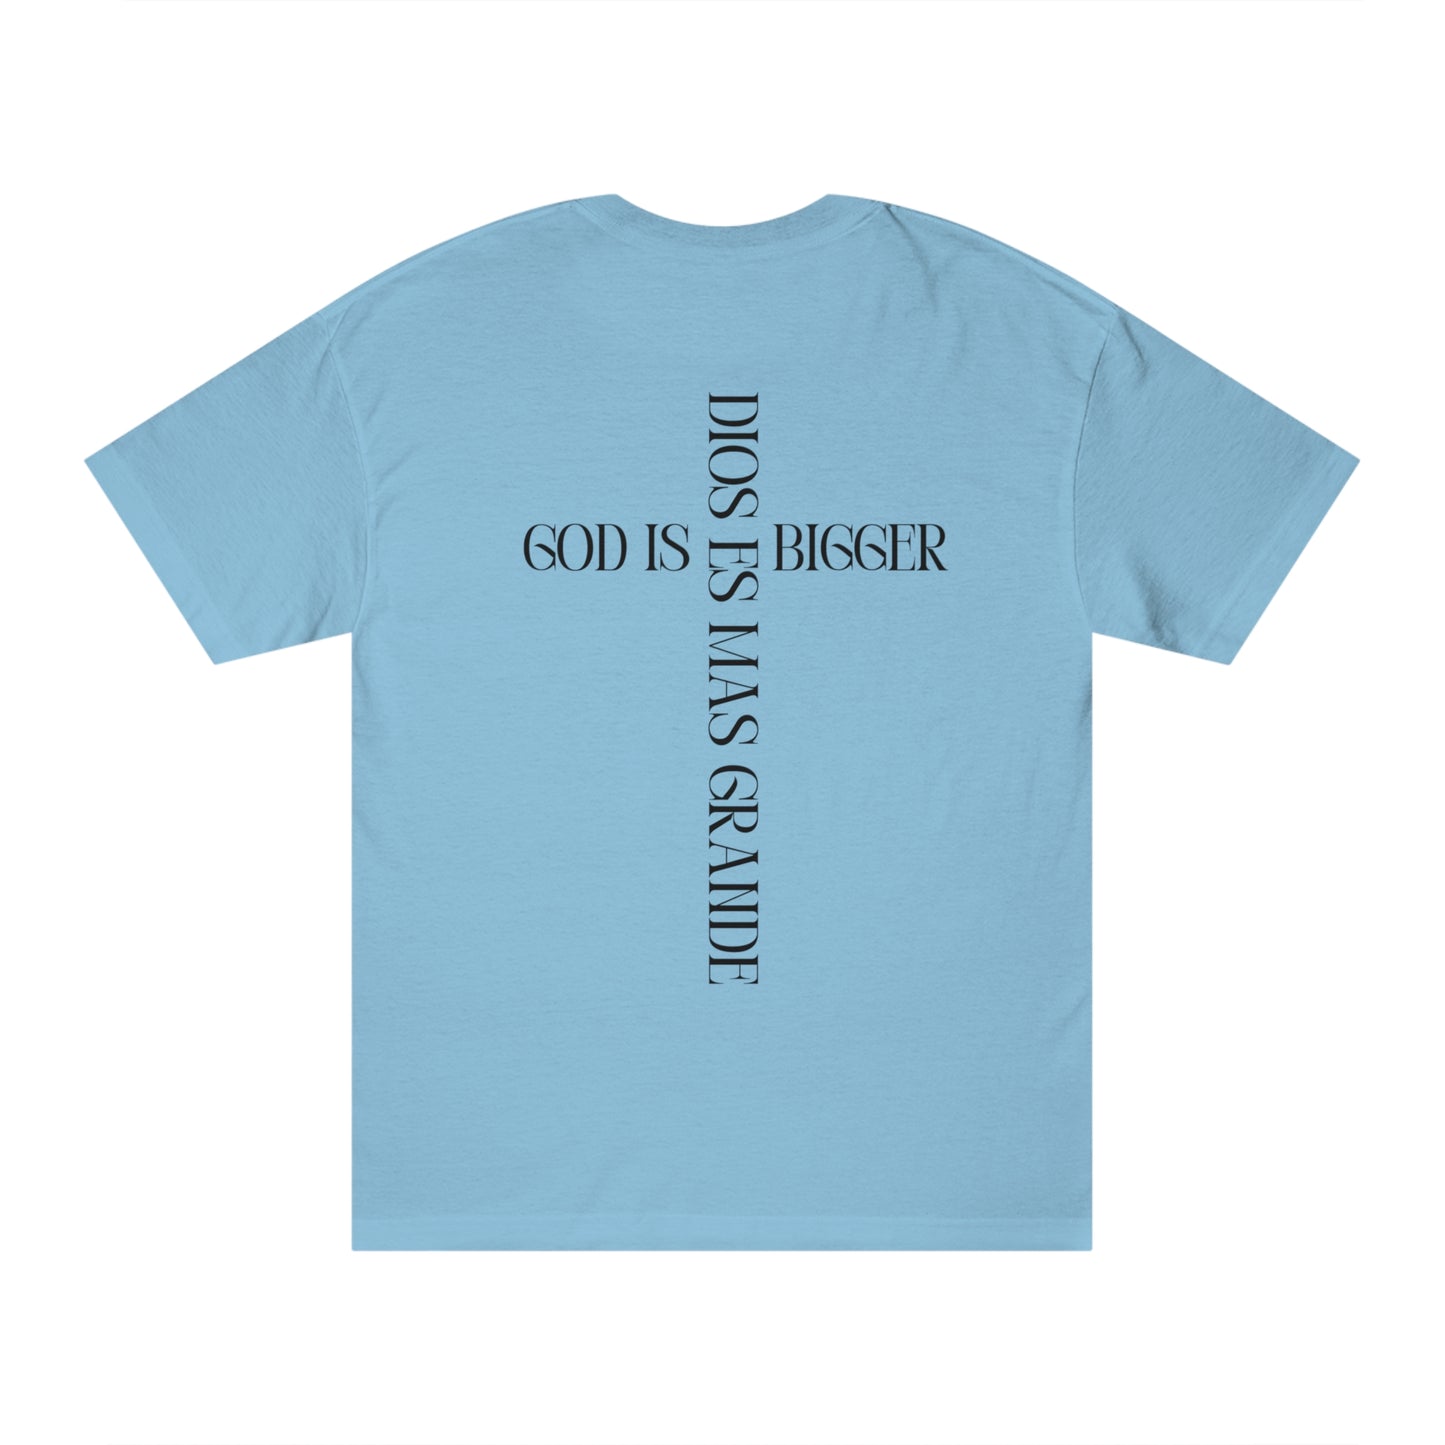 Dios es mas Grande (God is Bigger) T-shirt